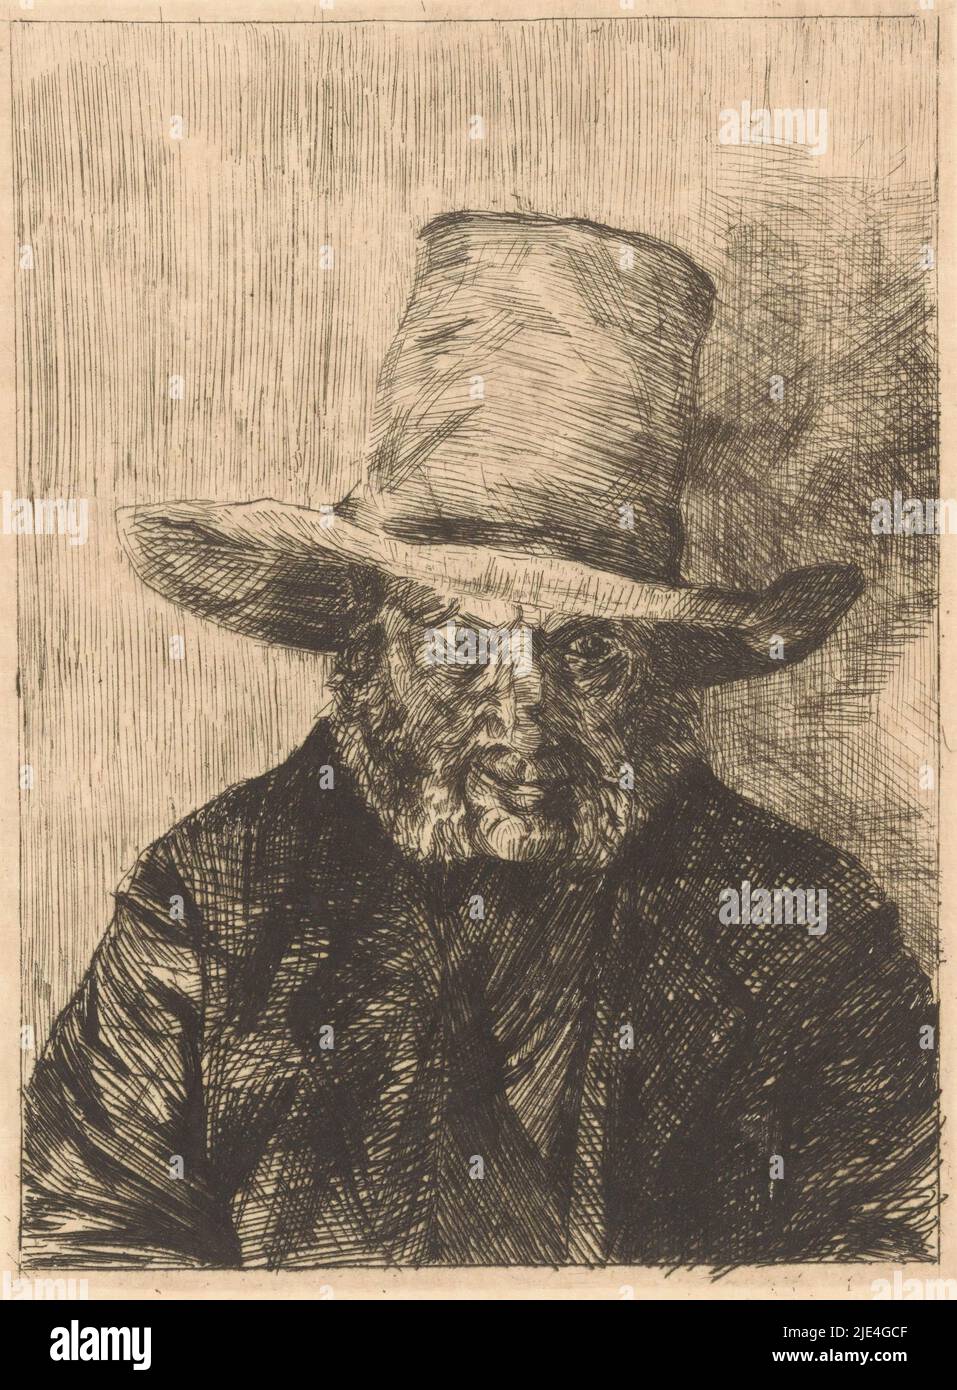 Portrait d'un homme inconnu, Martinus van Regteren Altena, 1876 - 1908, l'homme porte un chapeau et a des pattes., Imprimeur: Martinus van Regteren Altena, 1876 - 1908, papier, gravure, h 163 mm - l 123 mm Banque D'Images